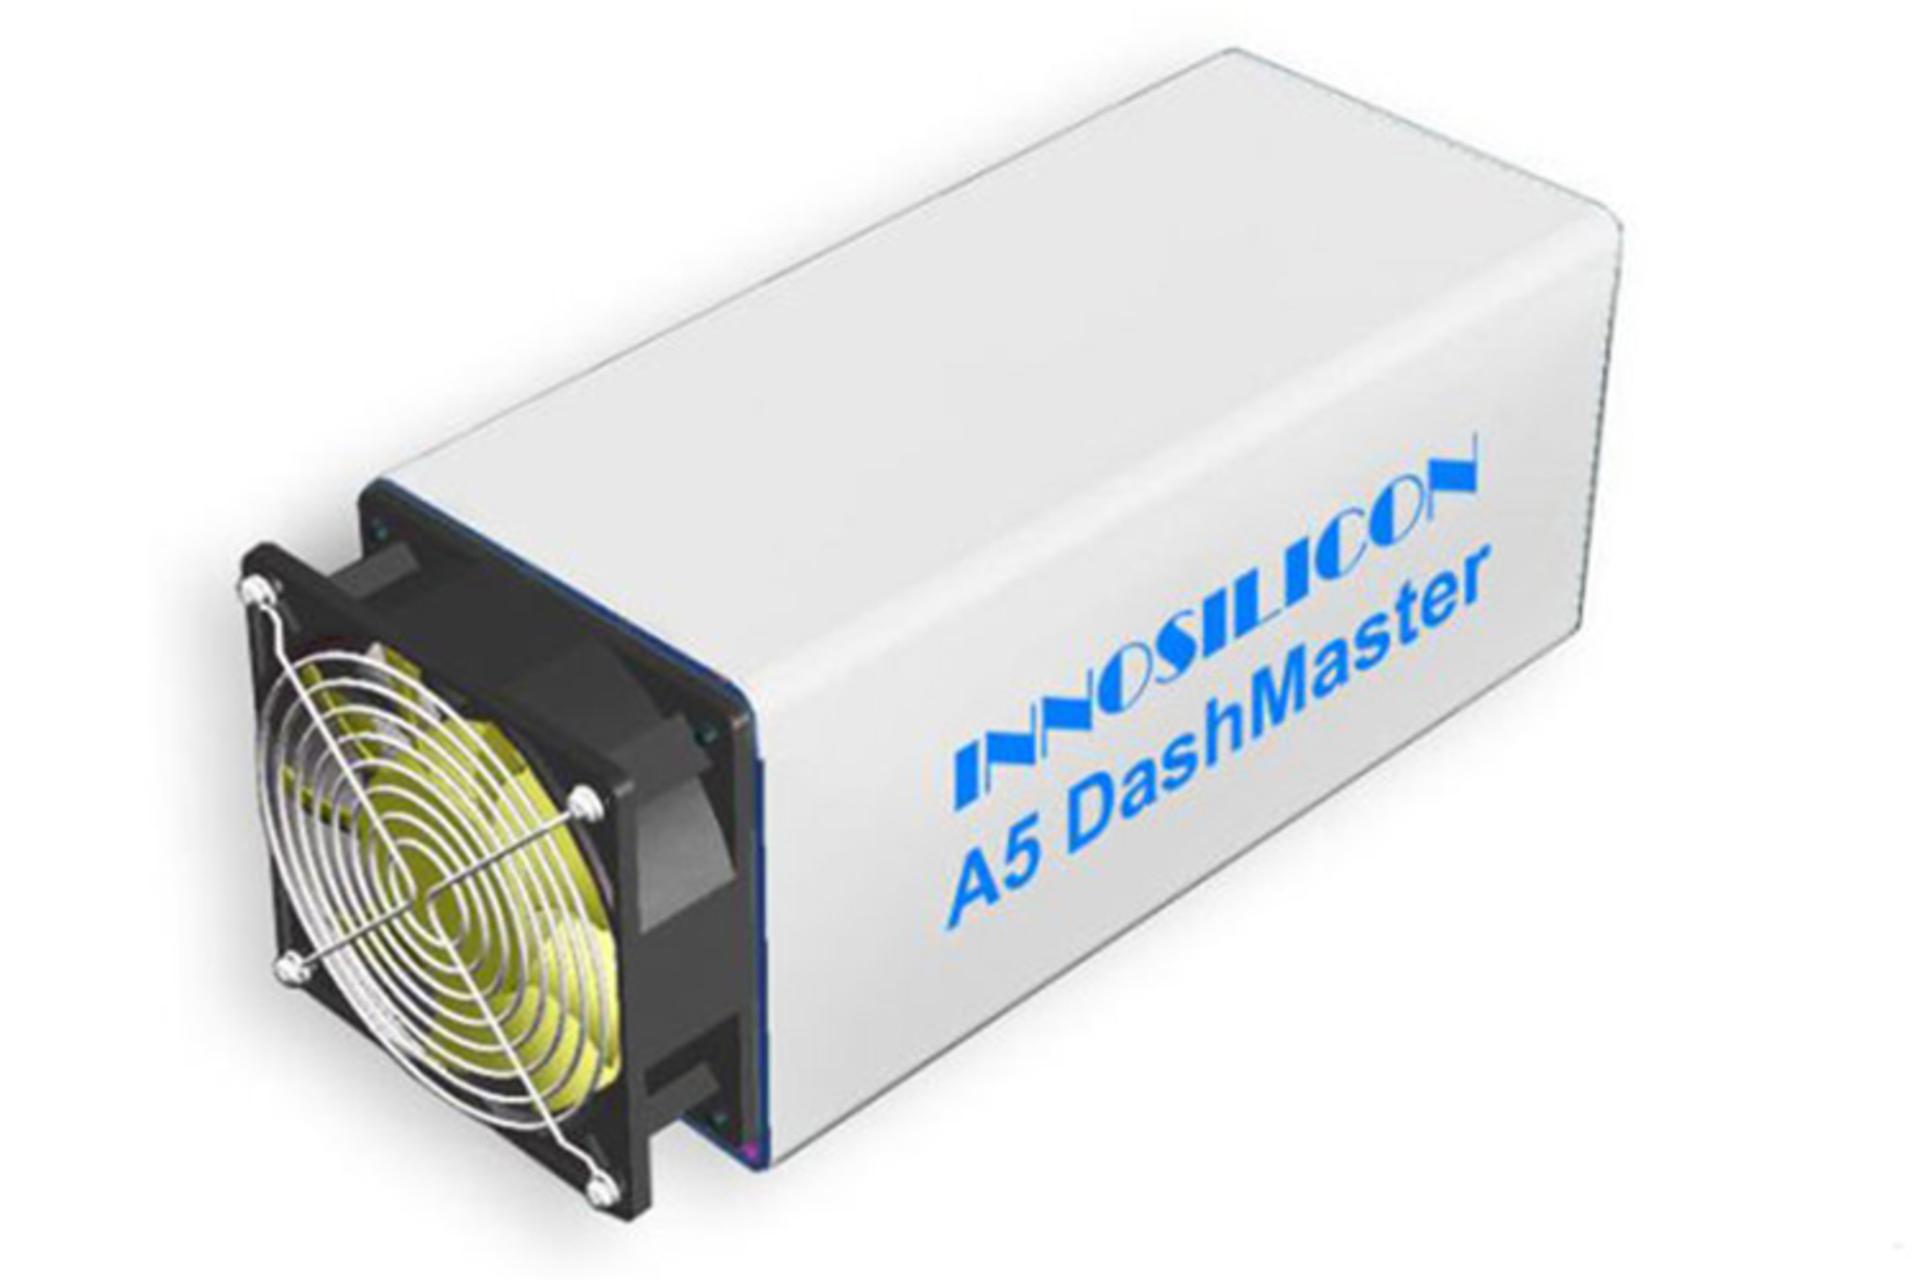 Innosilicon A5 DashMaster / ماینر Innosilicon A5 DashMaster